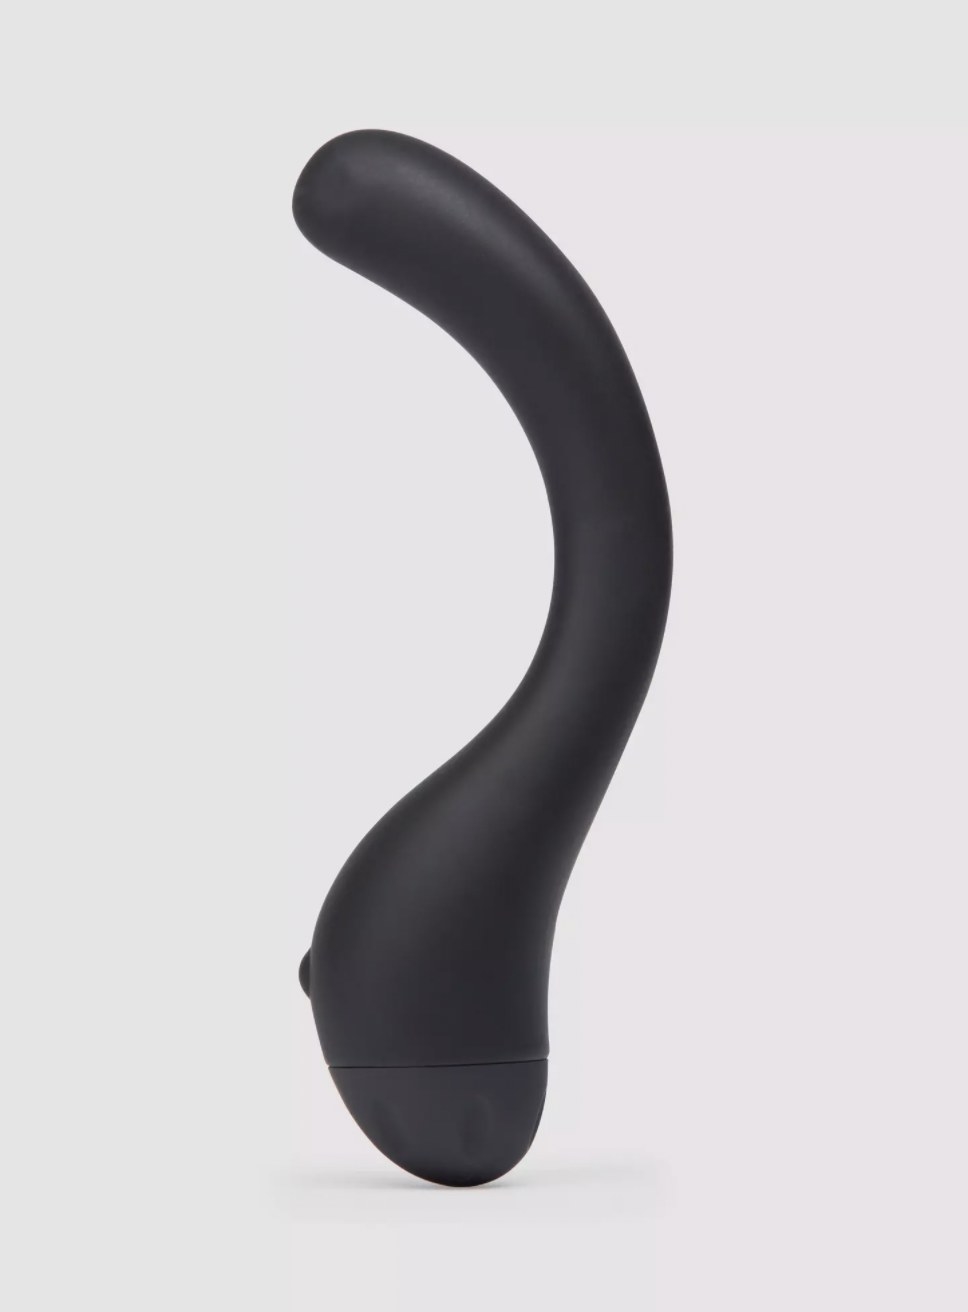 The black G-spot s-shaped vibrator